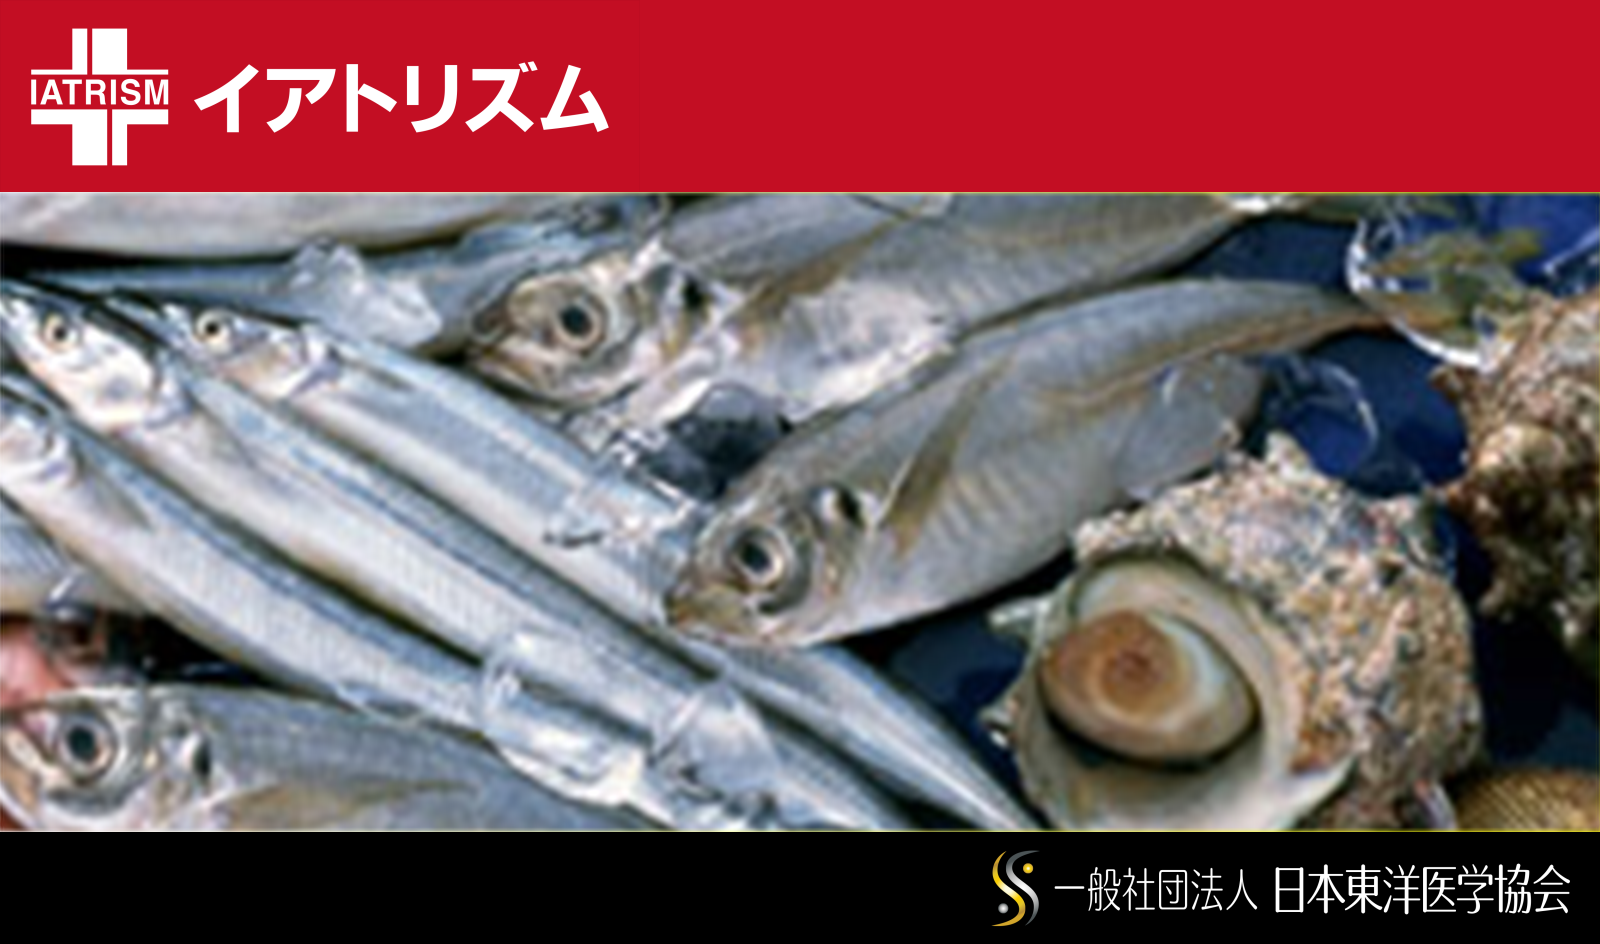 イアトリズム事典 知っておきたい『食品と栄養』で食品成分表 魚介類 に登場する 魚や貝たち が集う風景